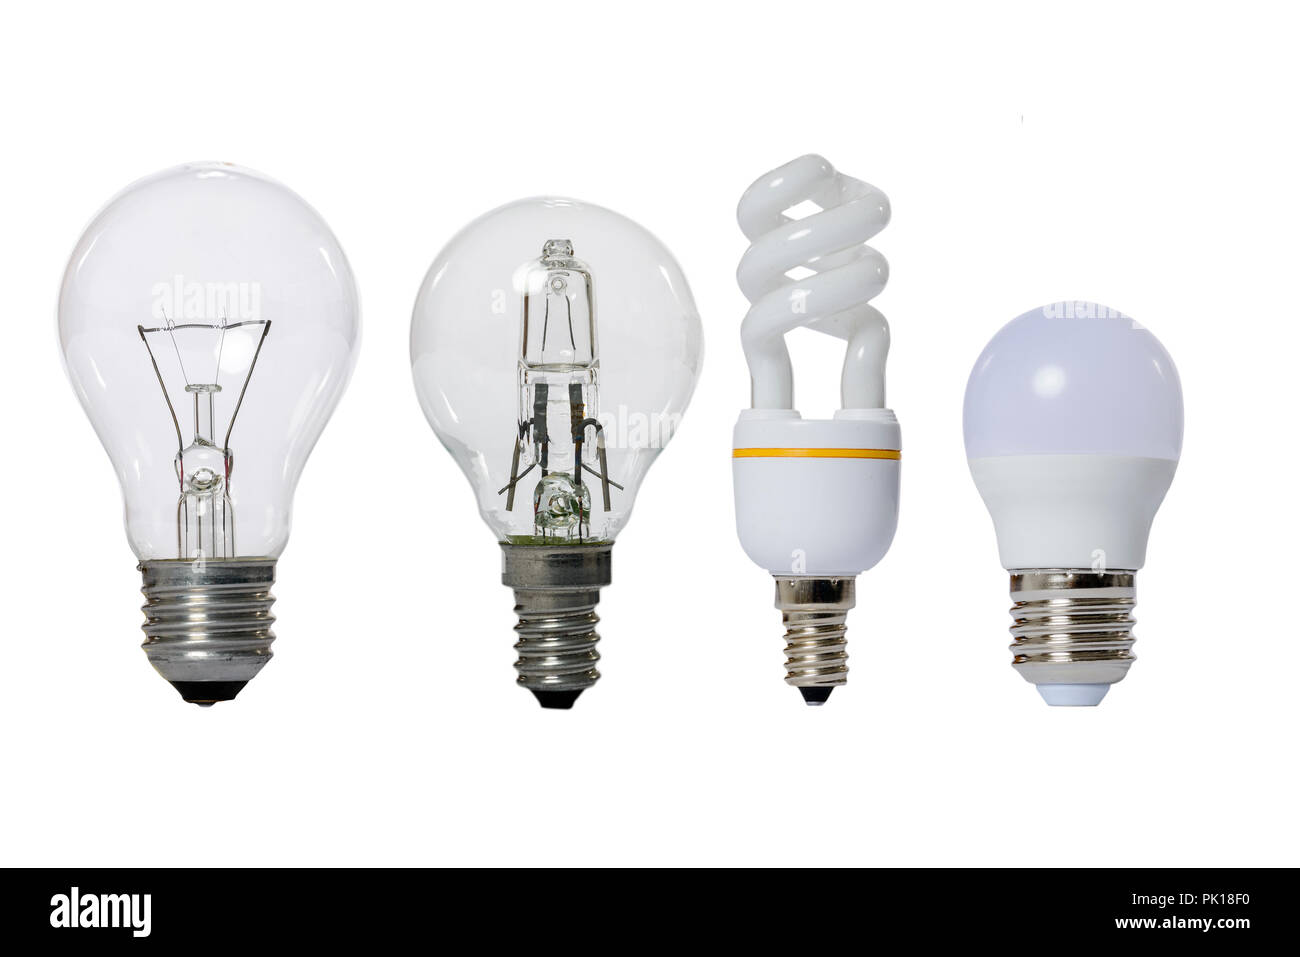 Gruppe von Lampen auf einem weißen Hintergrund: Led, Leuchtstofflampen,  Glühlampen, Halogen mit undurchsichtigem Glas Lampe und E27 Fassung  Stockfotografie - Alamy